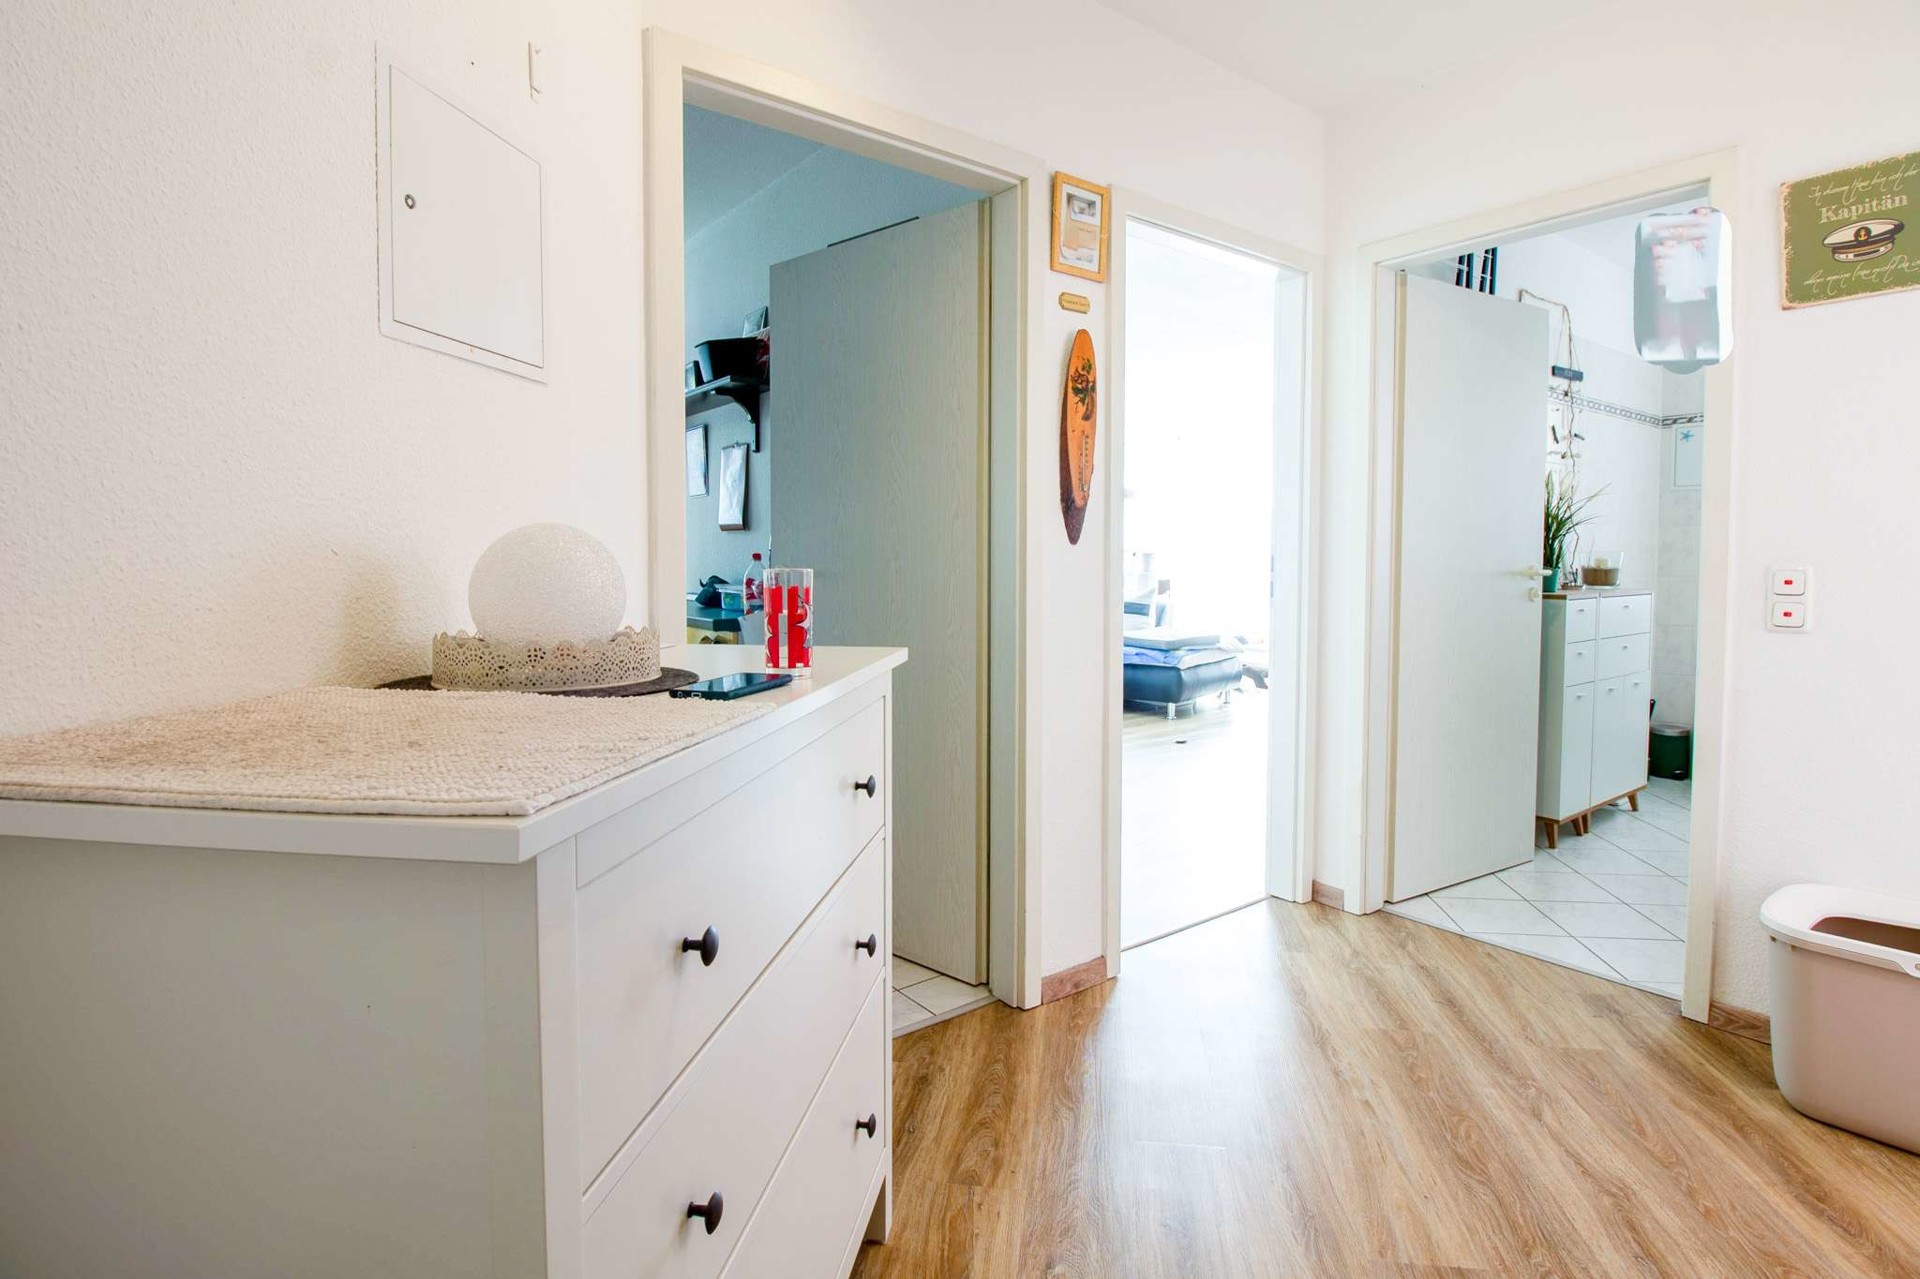 Gepflegte 2-Zimmer-Wohnung mit Terrasse – Ihr stilvolles Zuhause in grüner Umgebung! - Flur